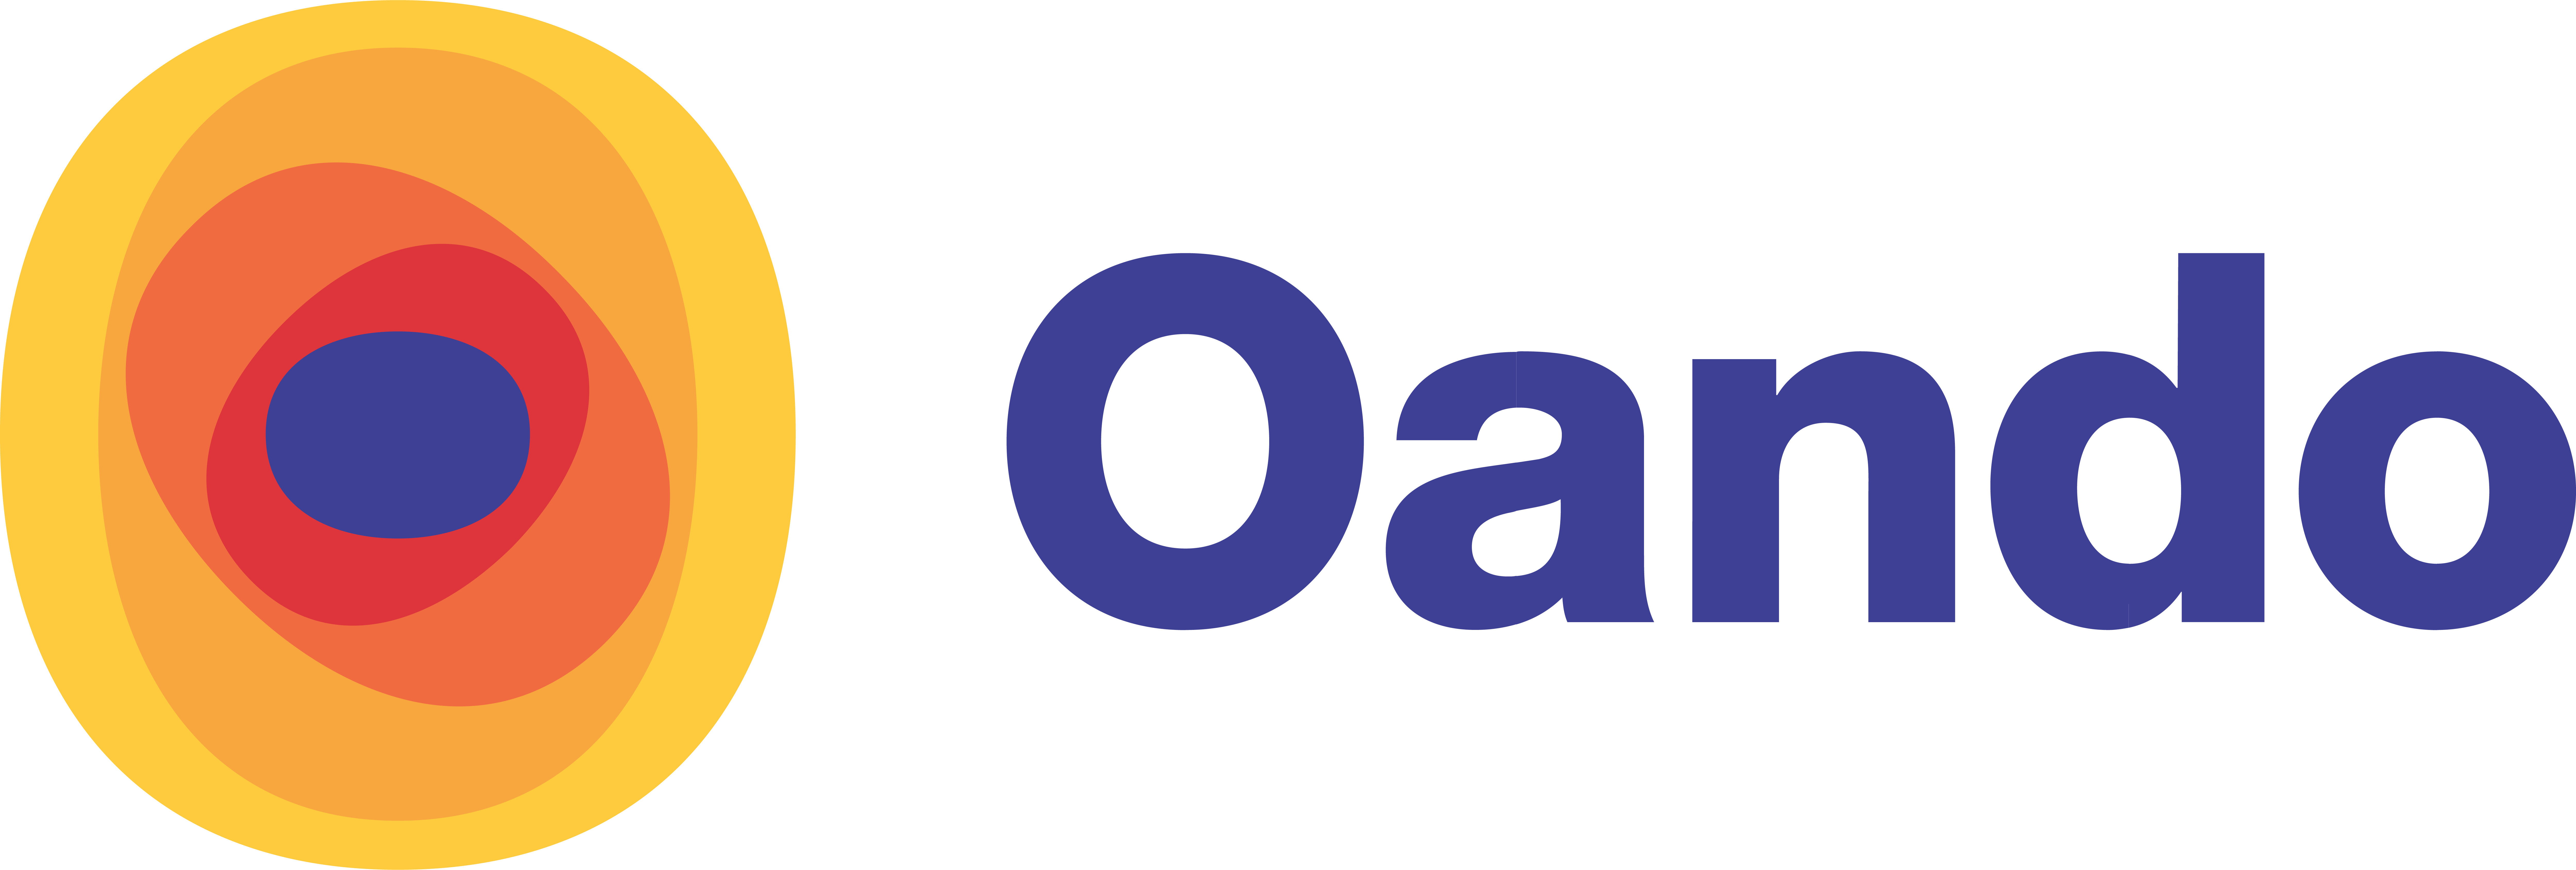 Oando PLC Celebrates Oando Foundation’s 10th Anniversary